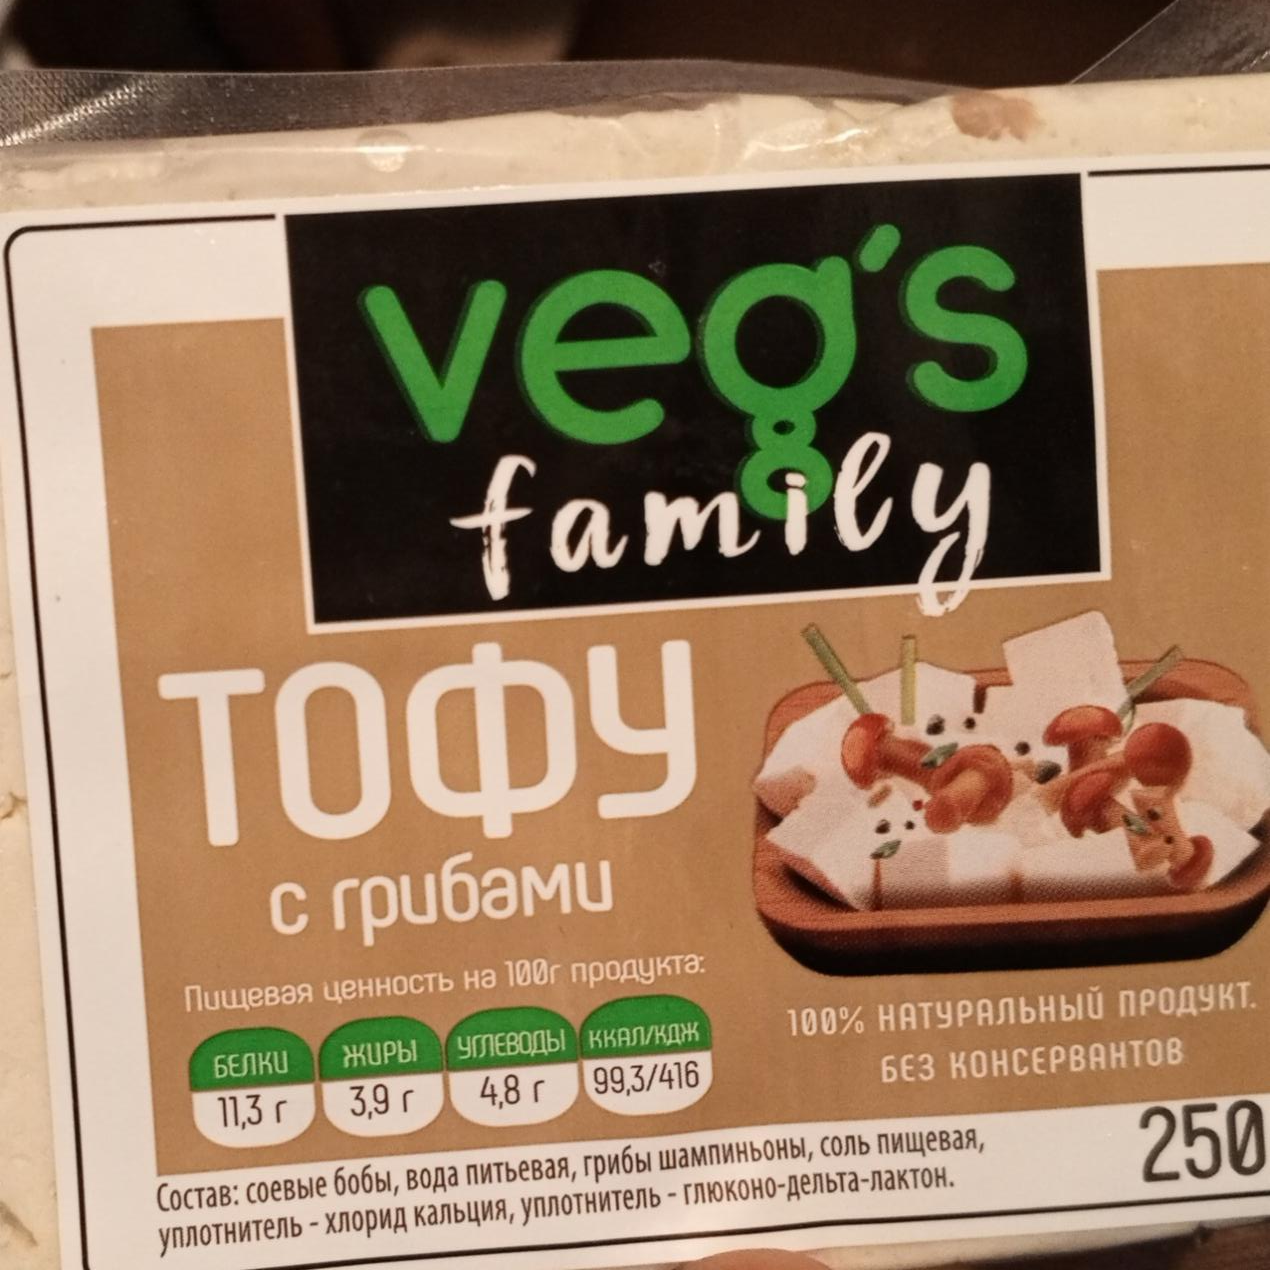 Фото - Продукт соевый тофу с грибами Veg's